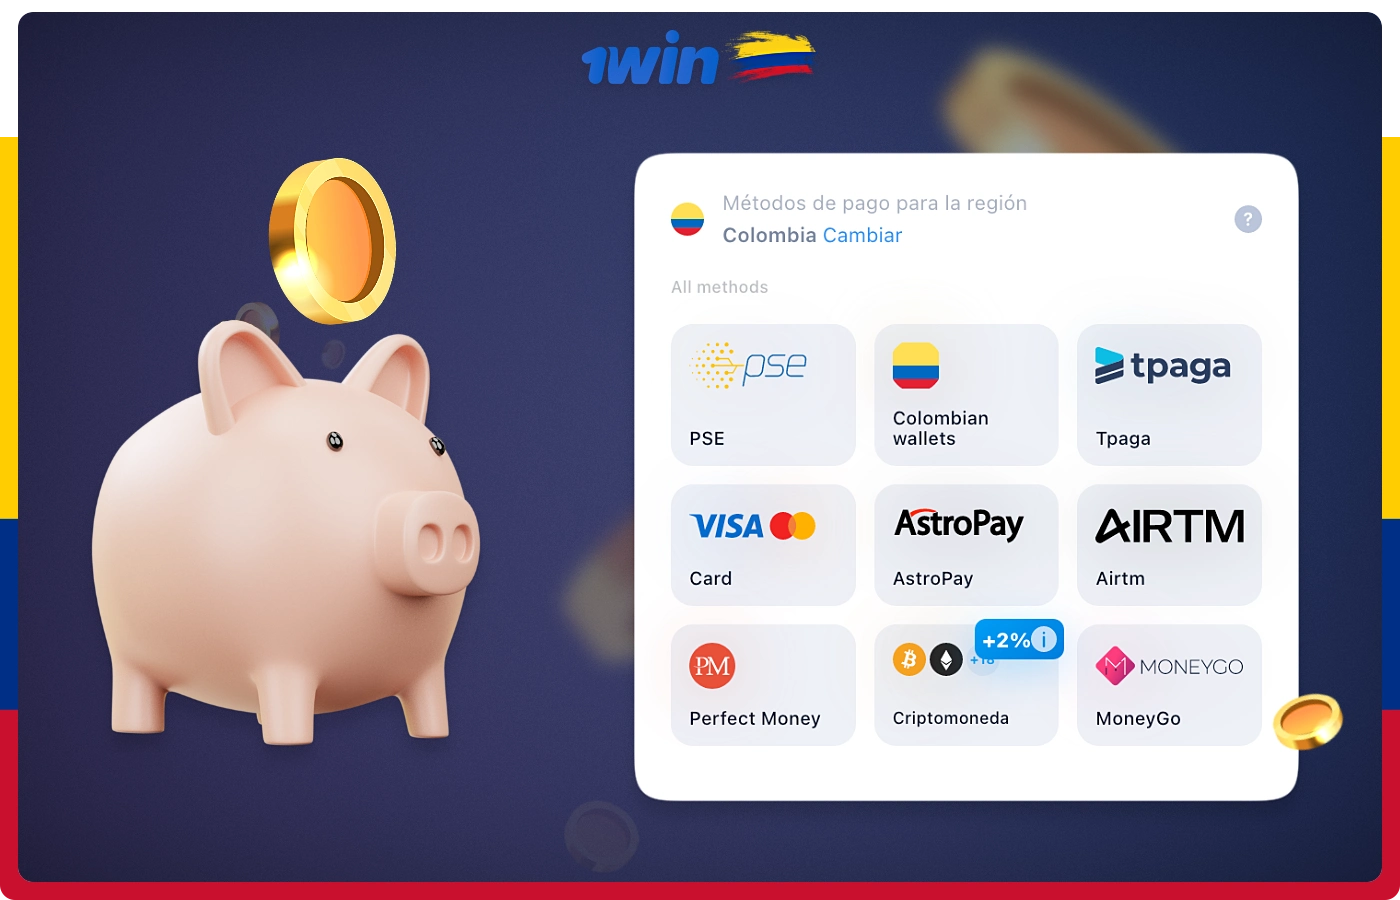 Puede recargar su cuenta 1win desde Colombia utilizando uno de los siguientes métodos de pago